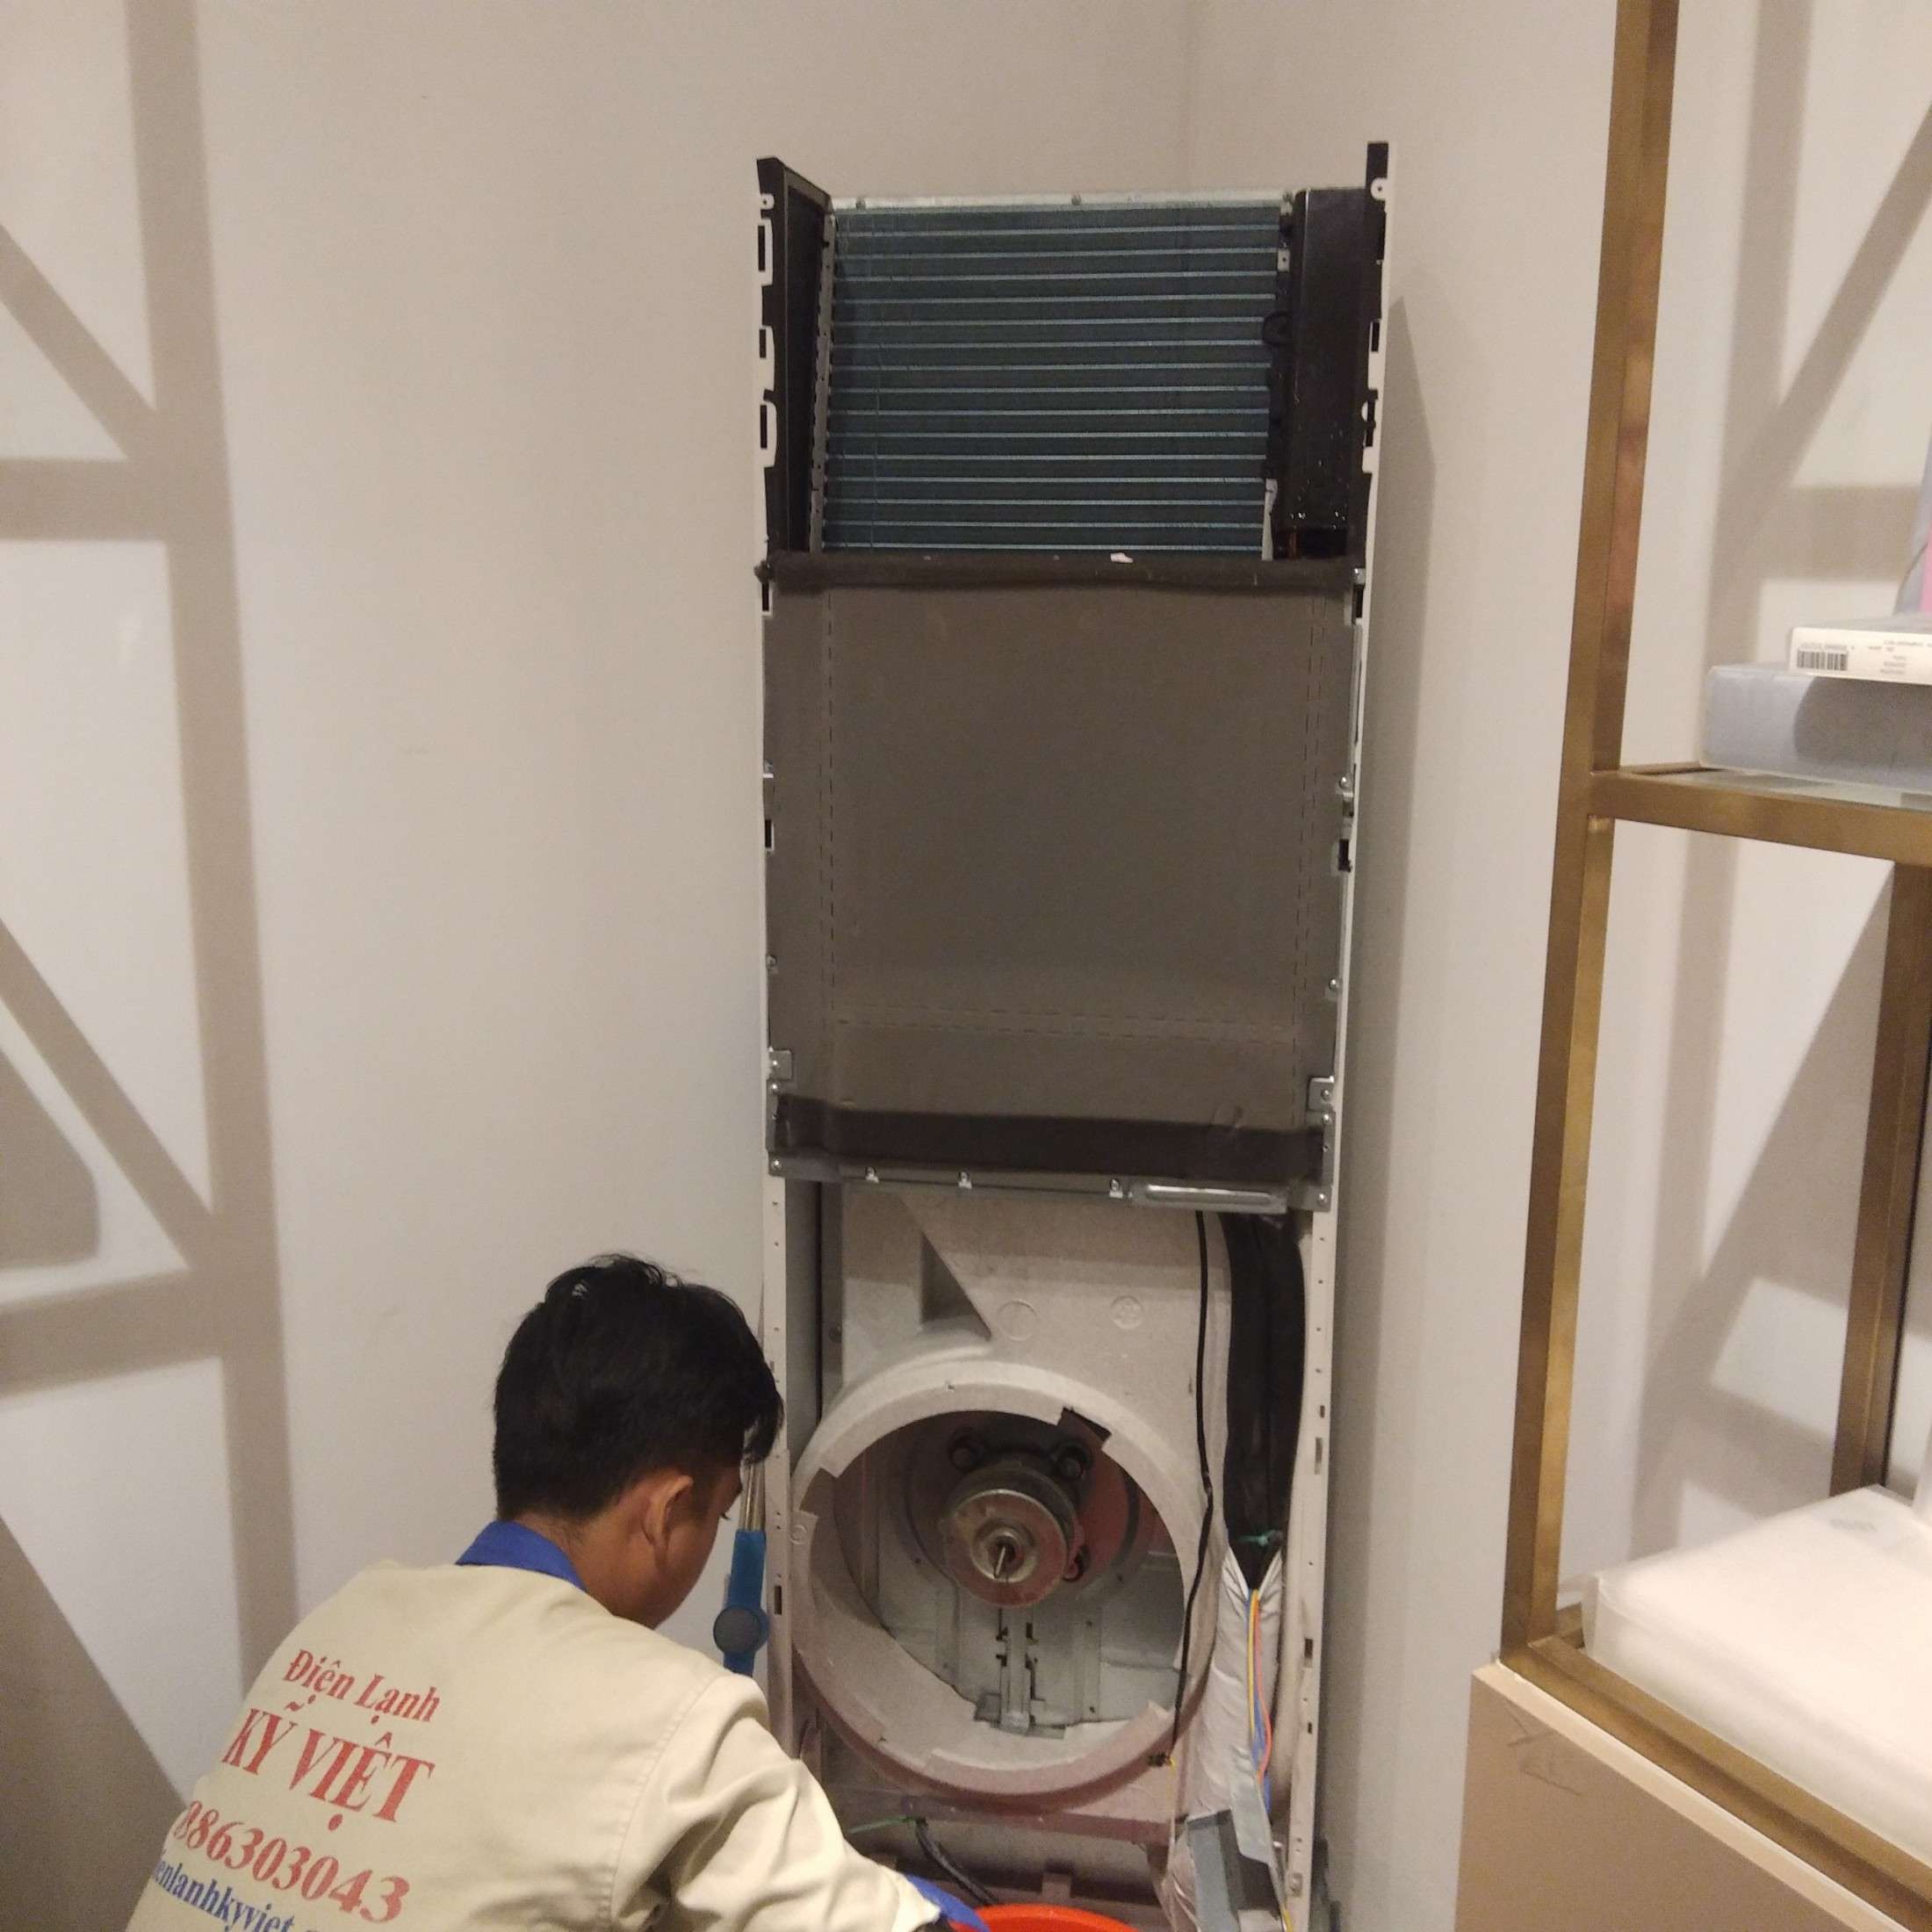 Vệ sinh máy lạnh I vệ sinh máy lạnh tủ đứng - Điện Lạnh Kỹ Việt